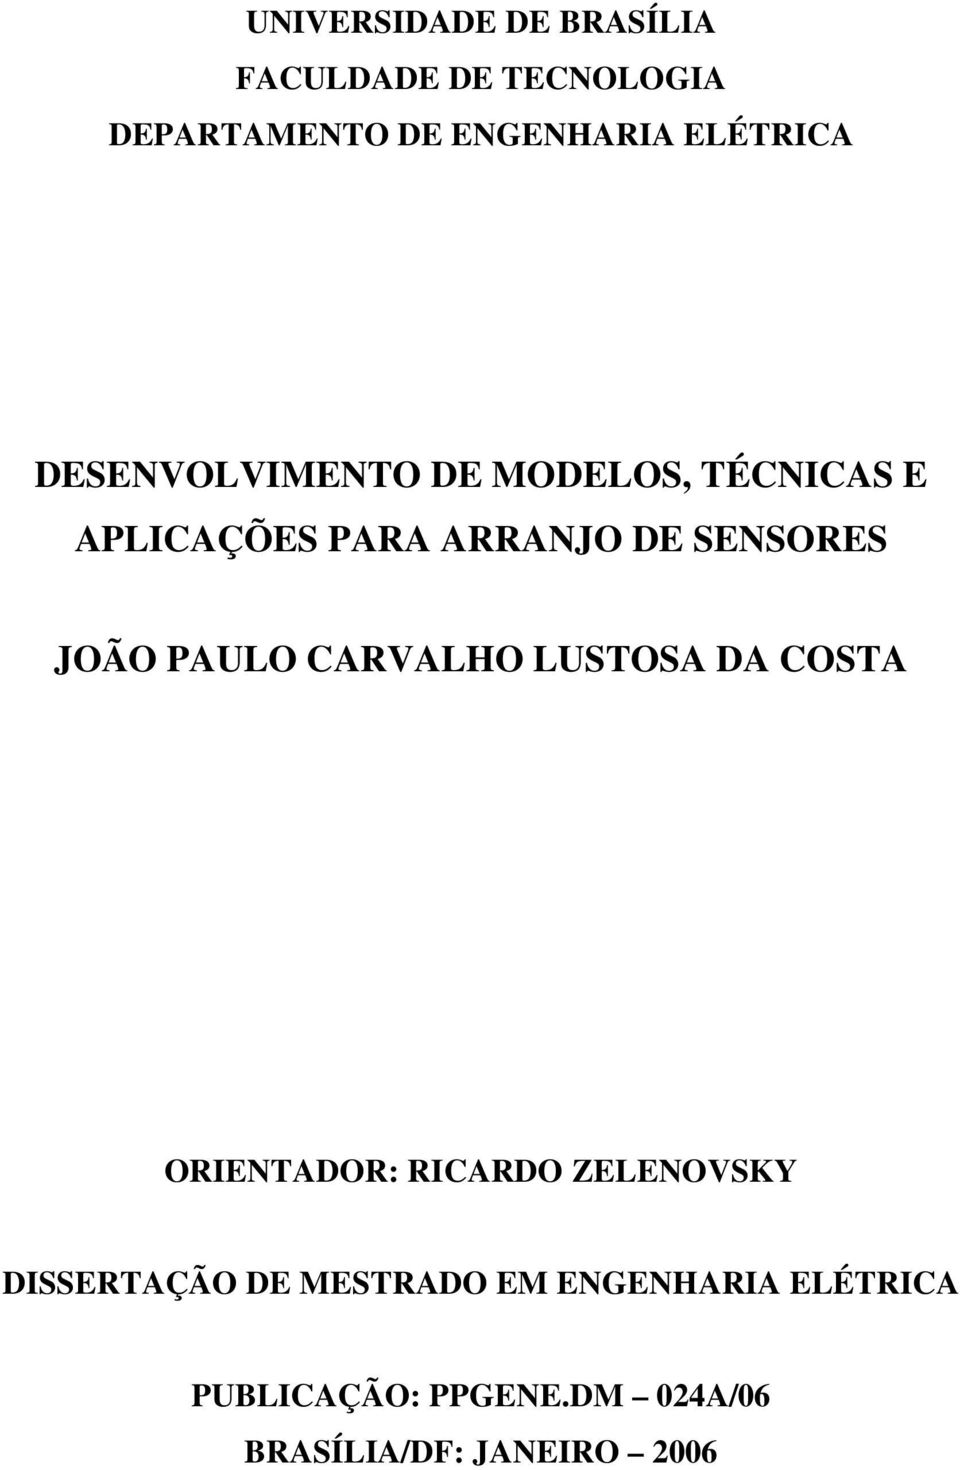 SENSORES JOÃO PAULO CARVALHO LUSTOSA DA COSTA ORIENTADOR: RICARDO ZELENOVSKY